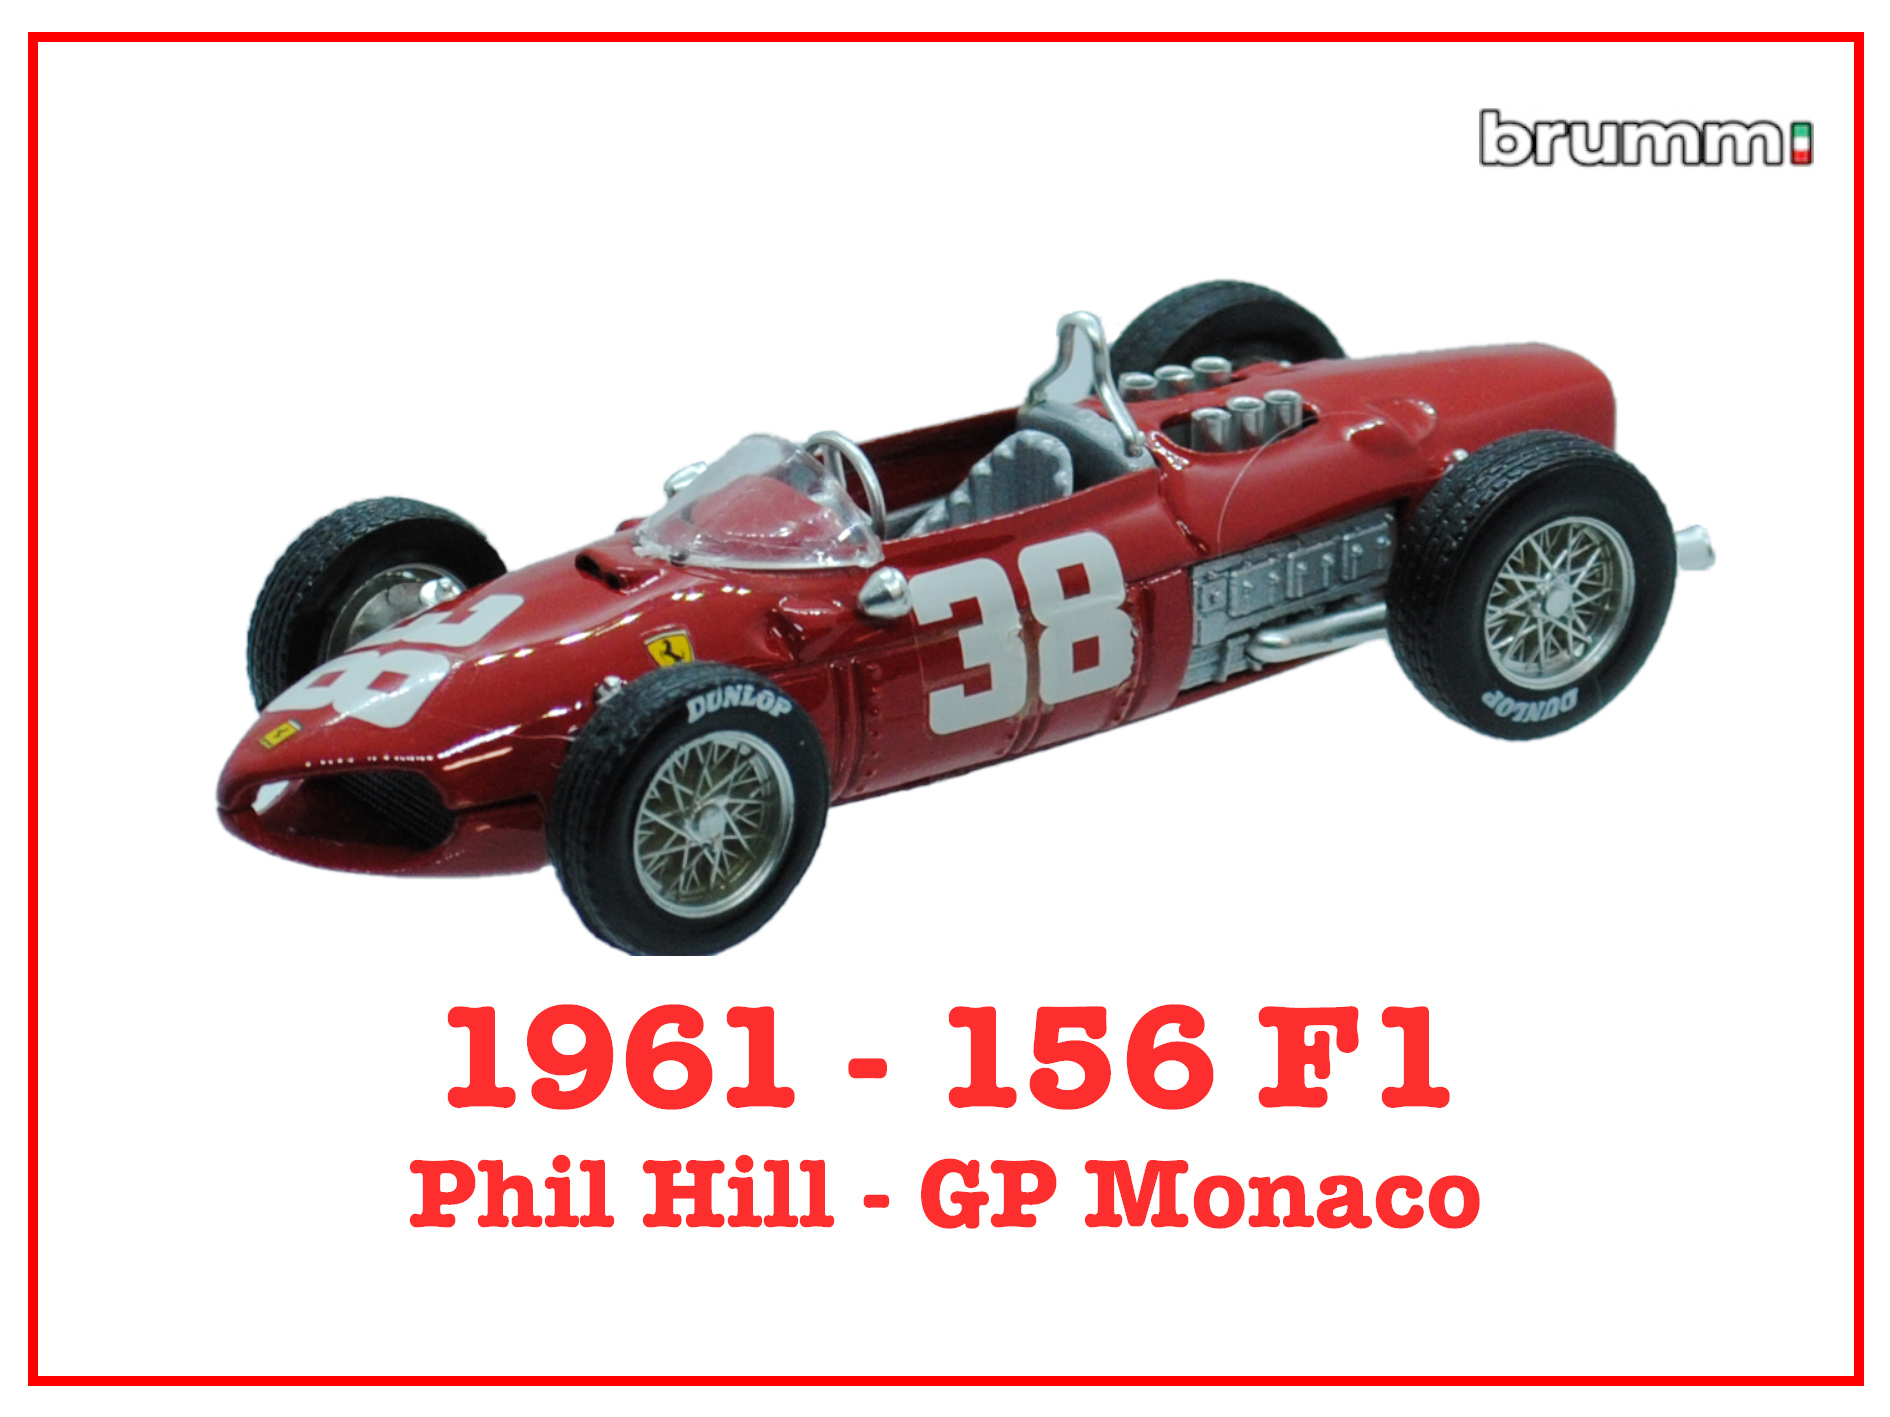 Immagine 156 F1 Phil Hill GP Monaco